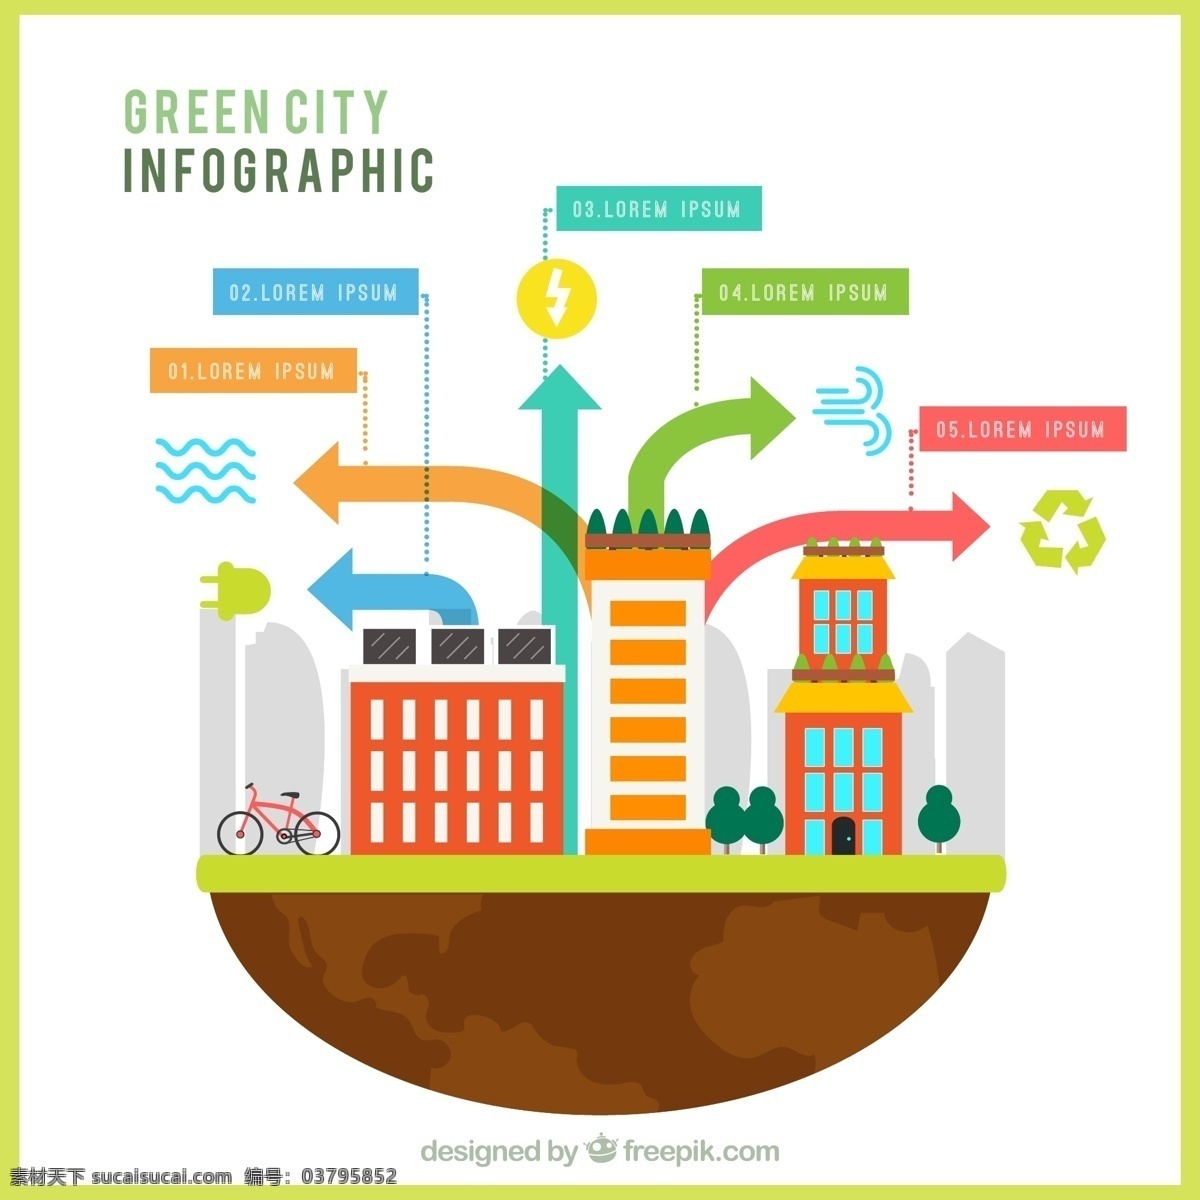 扁平化 城市 信息 图表 信息图表 箭 建筑 自然 地球 自行车 平面 箭头 蔬菜 图形 生态 能源 有机 流程 数据